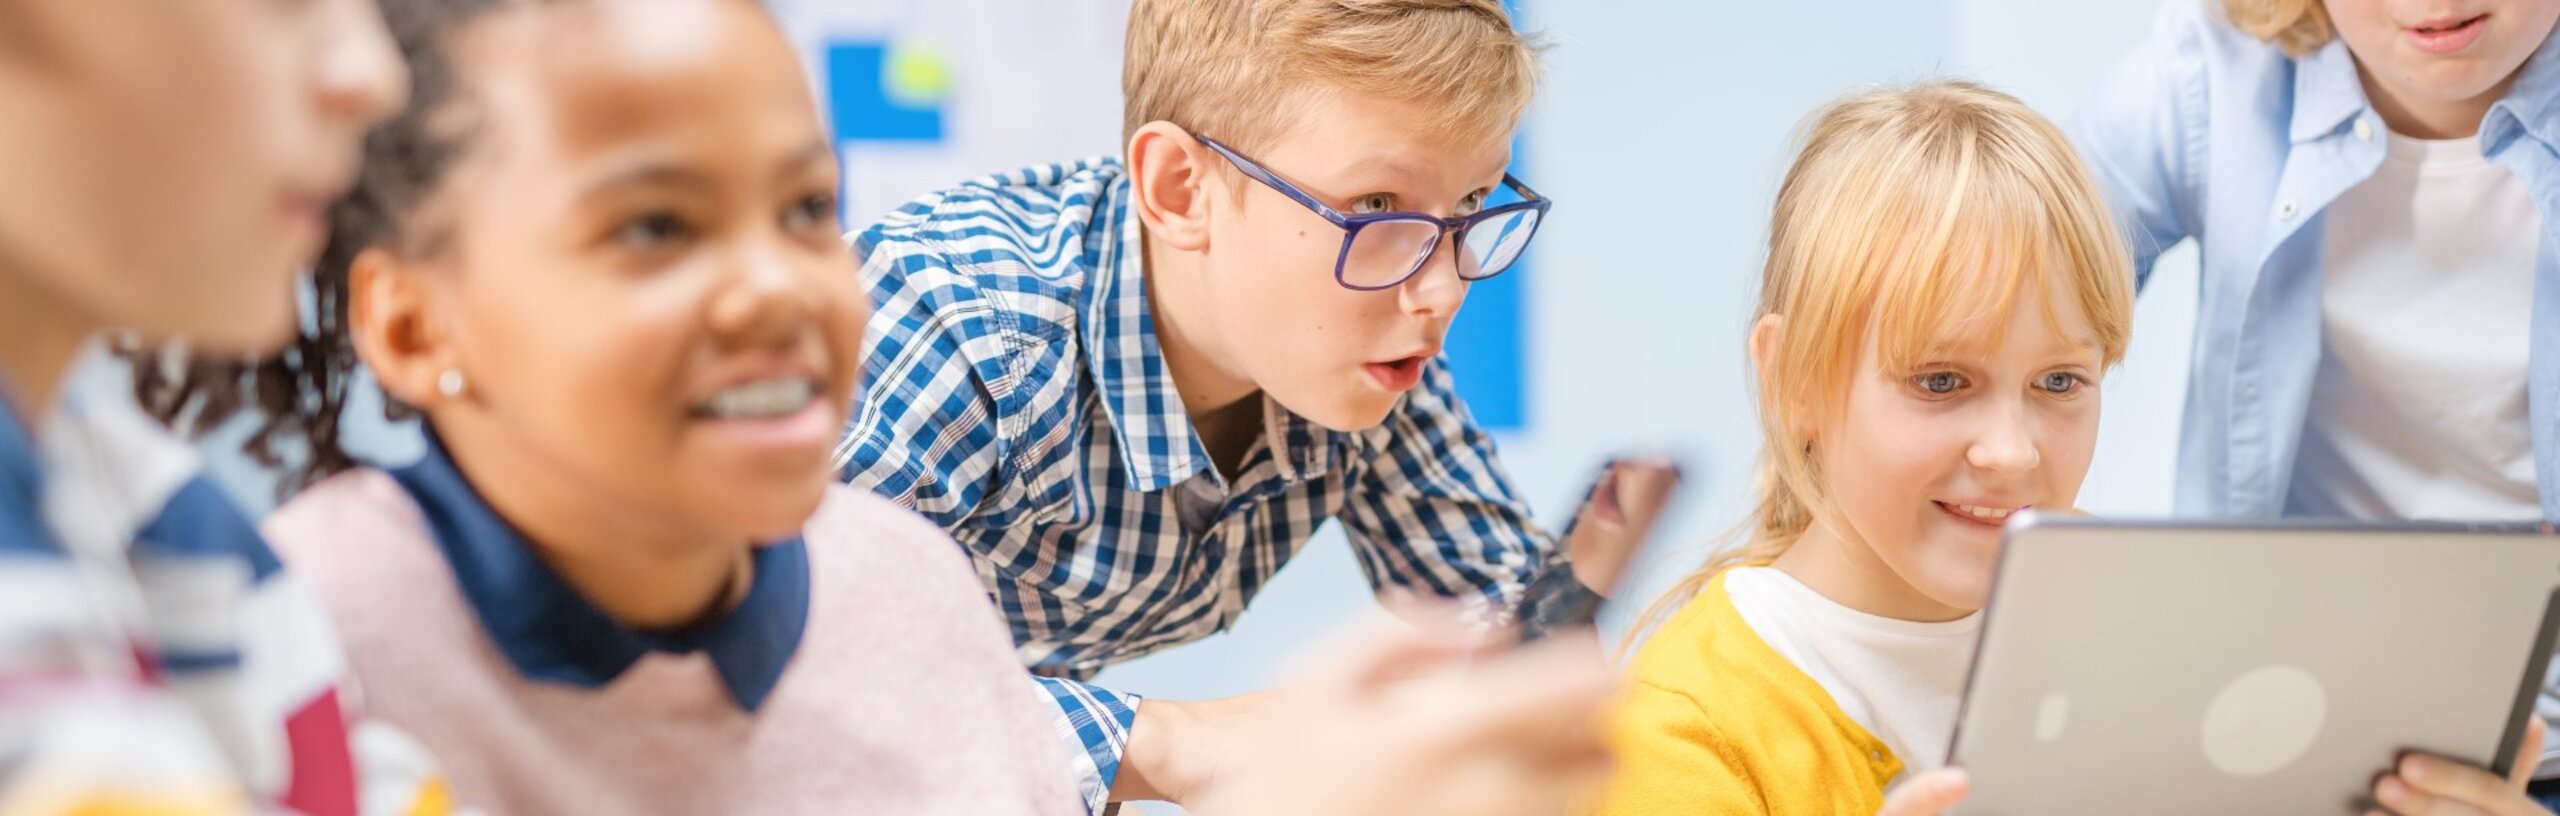 Kinder sitzen an einem Tisch in einem Klassenzimmer und schauen auf ein Tablet, dass ein Mädchen in der Hand hält.